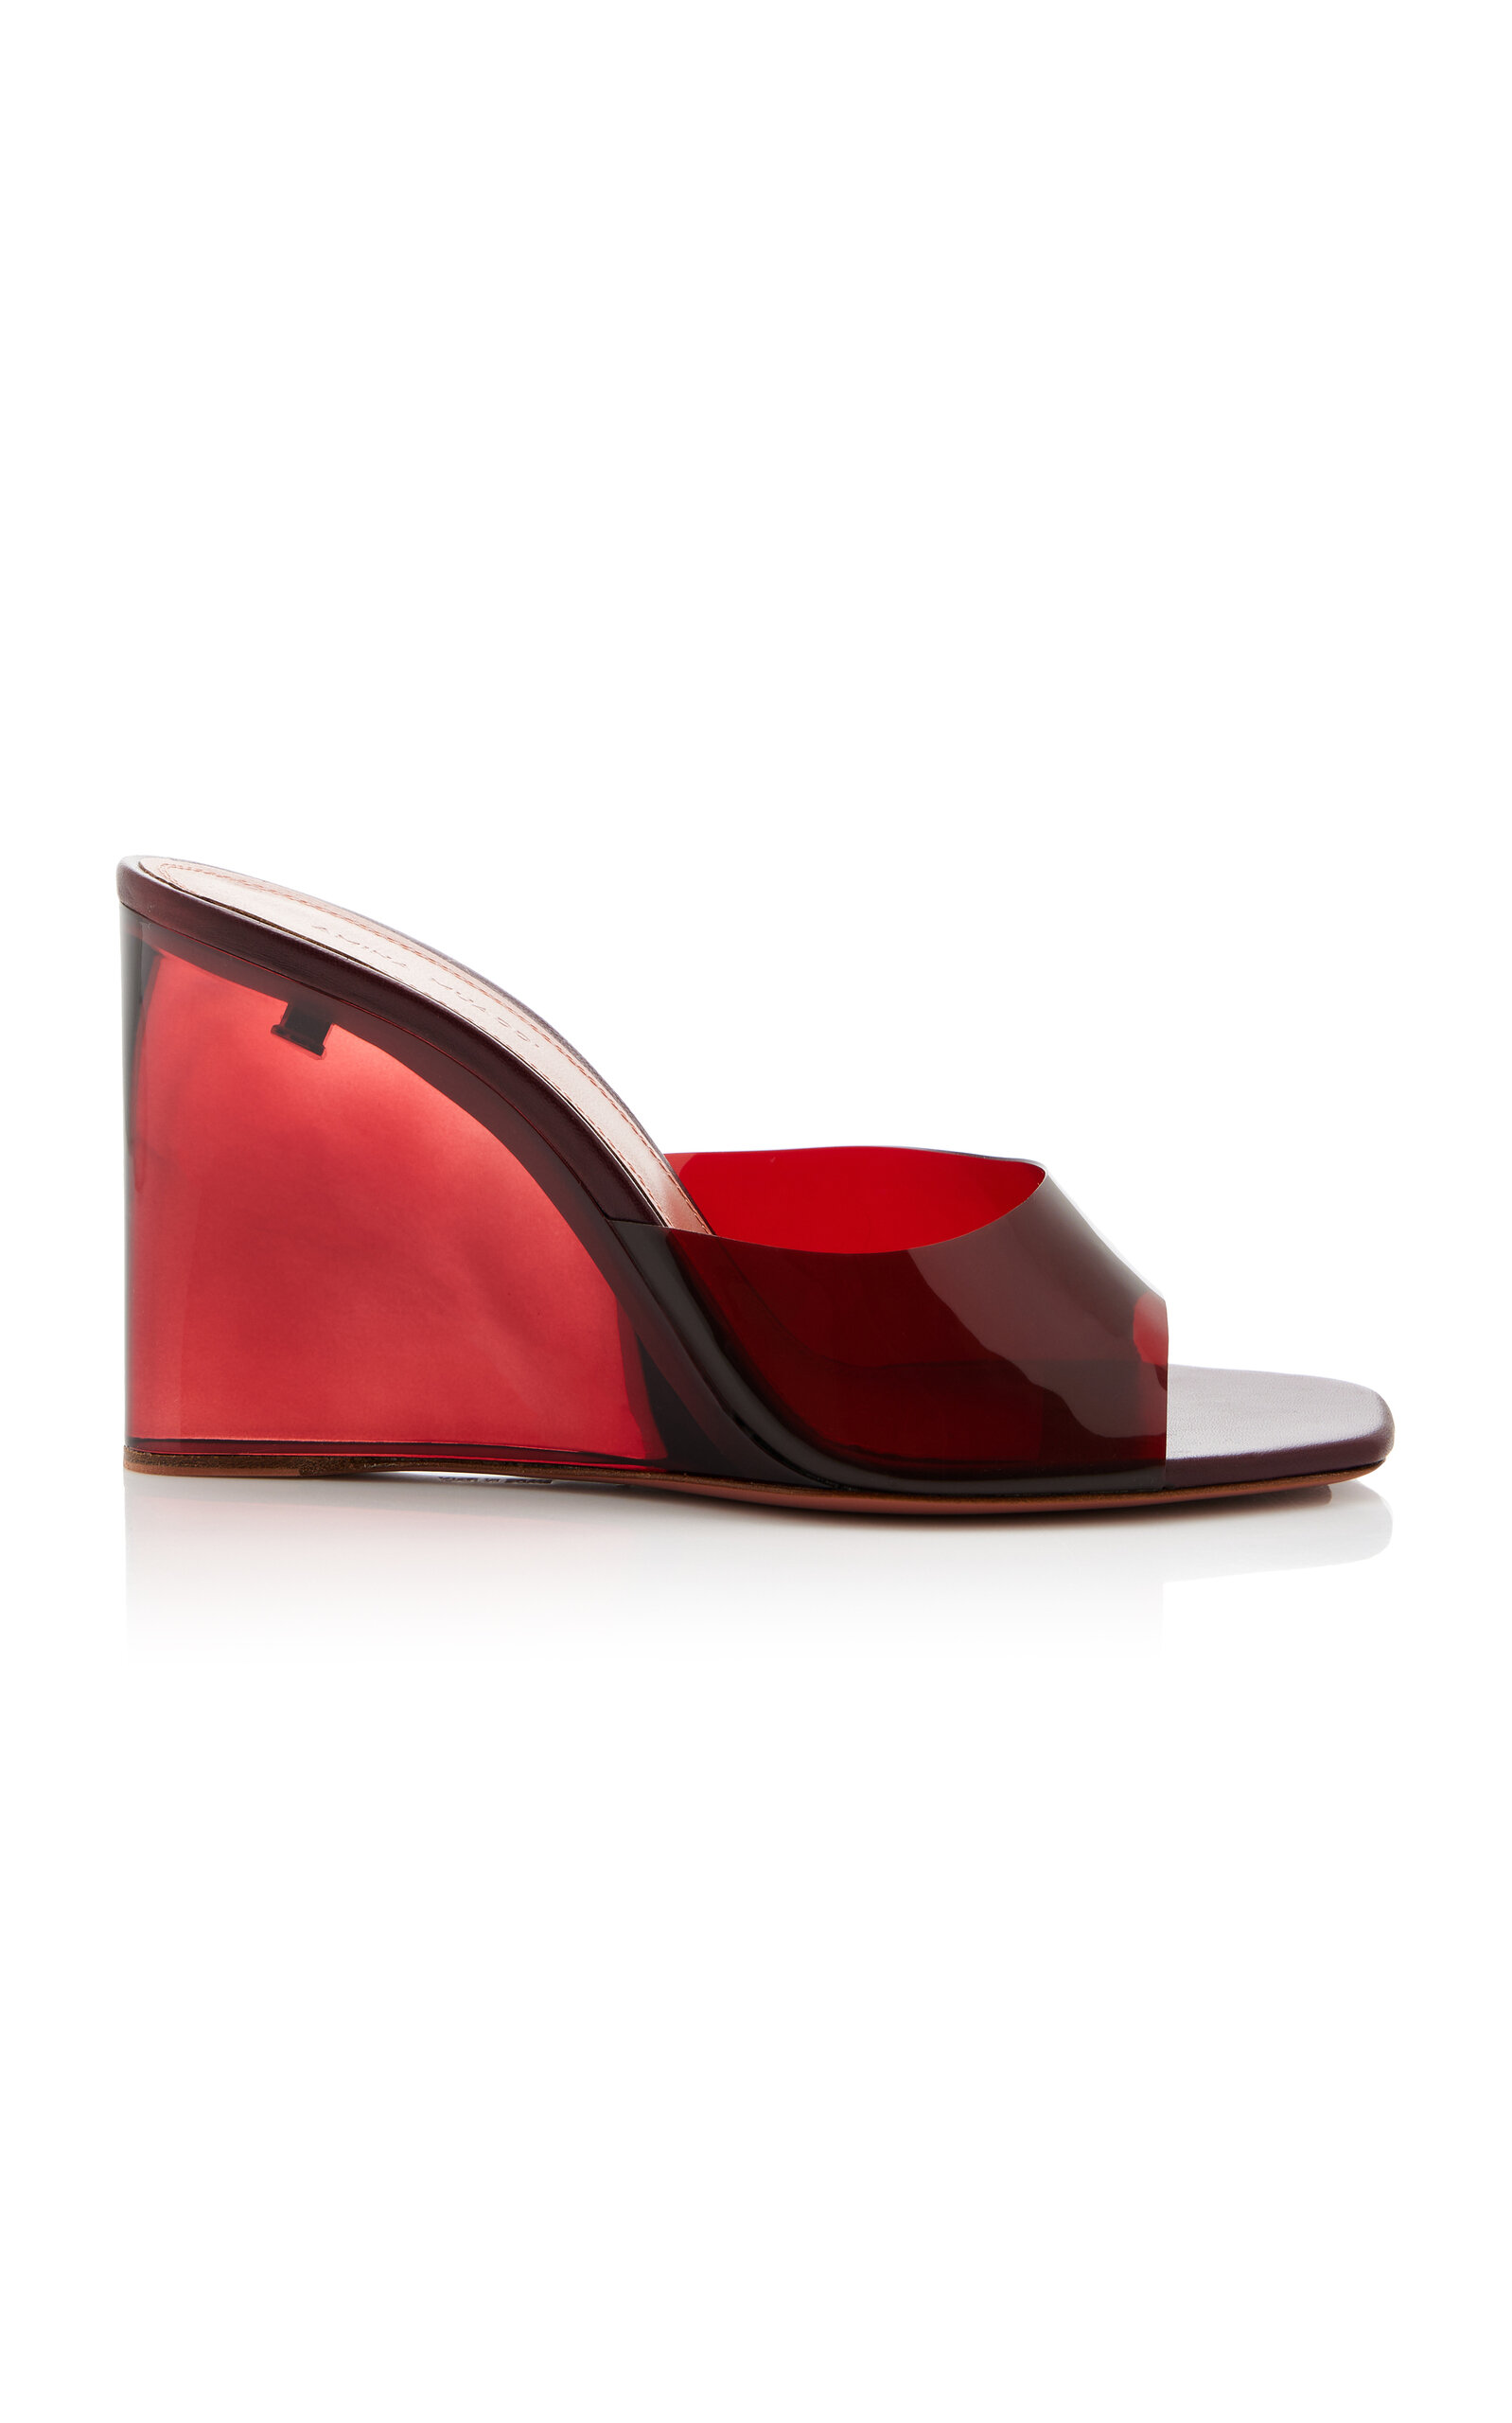 Amina Muaddi - Lupita PVC Wedge Sandals - Red - IT 37.5 - Moda Operandi